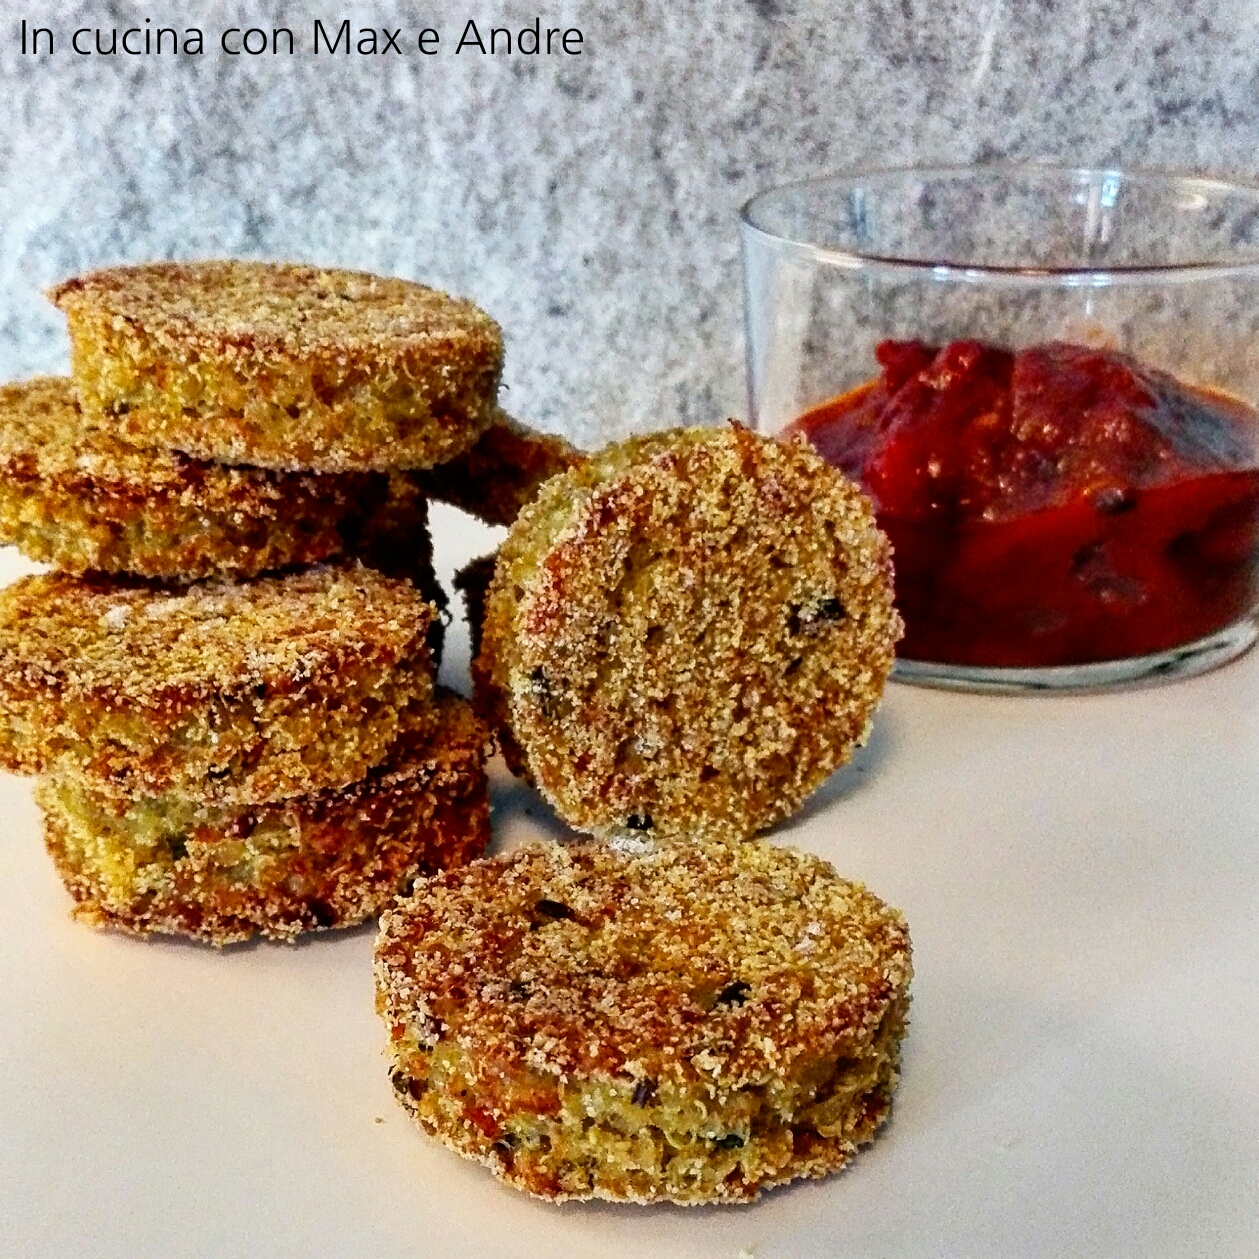 Crocchette di quinoa e miglio con salsa piccante